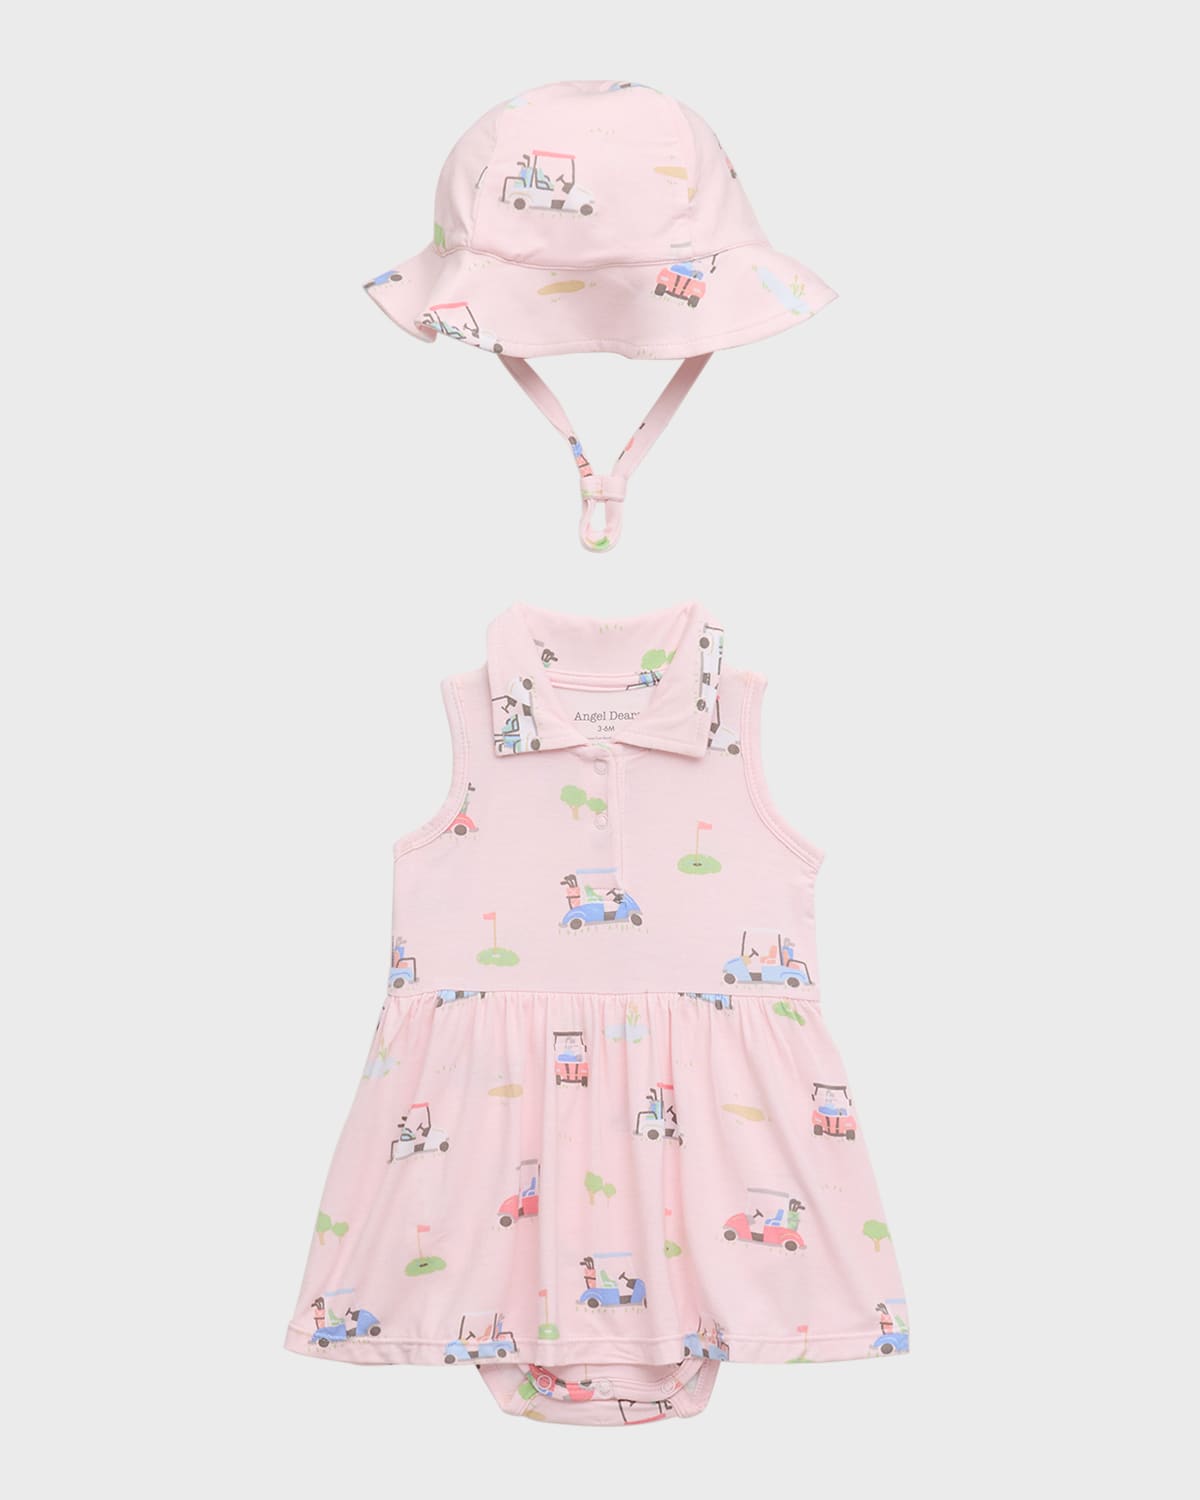 Angel Dear Kids' Girl's Golf Cart Tennis Bodysuit Dress With Sunhat In Golf Cart Pink